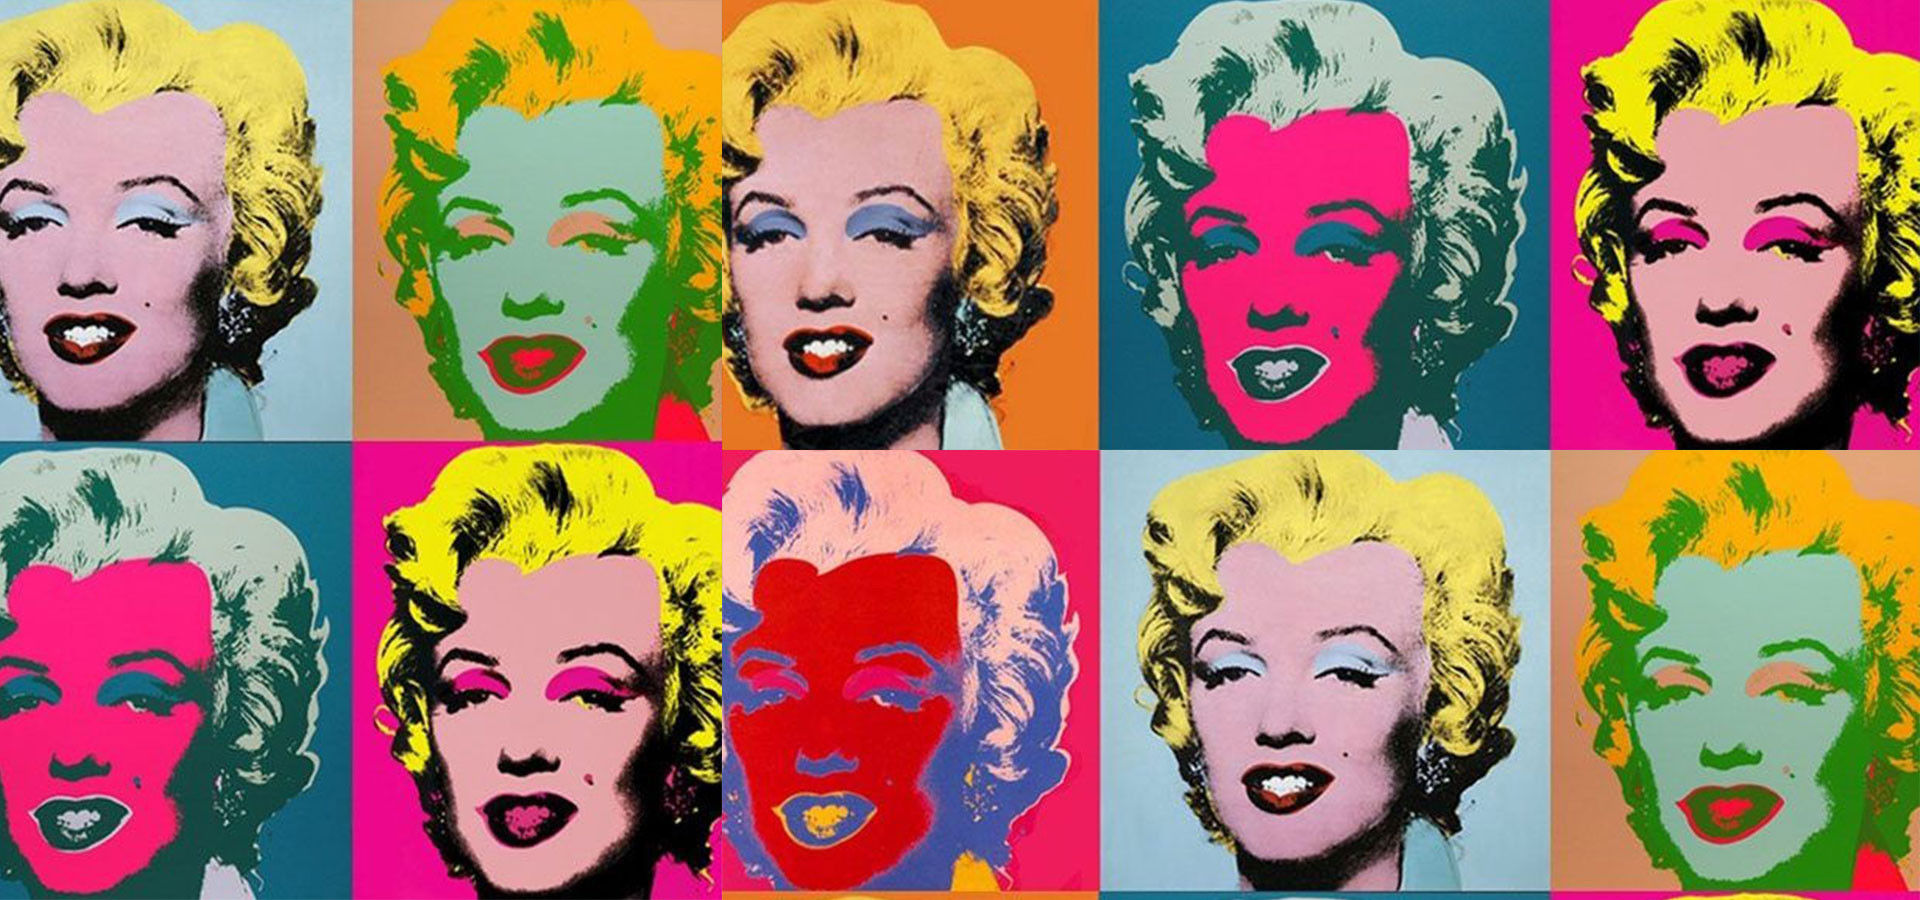 Muestra de arte pop: Díptico de Marilyn Monroe de Andy Warhol